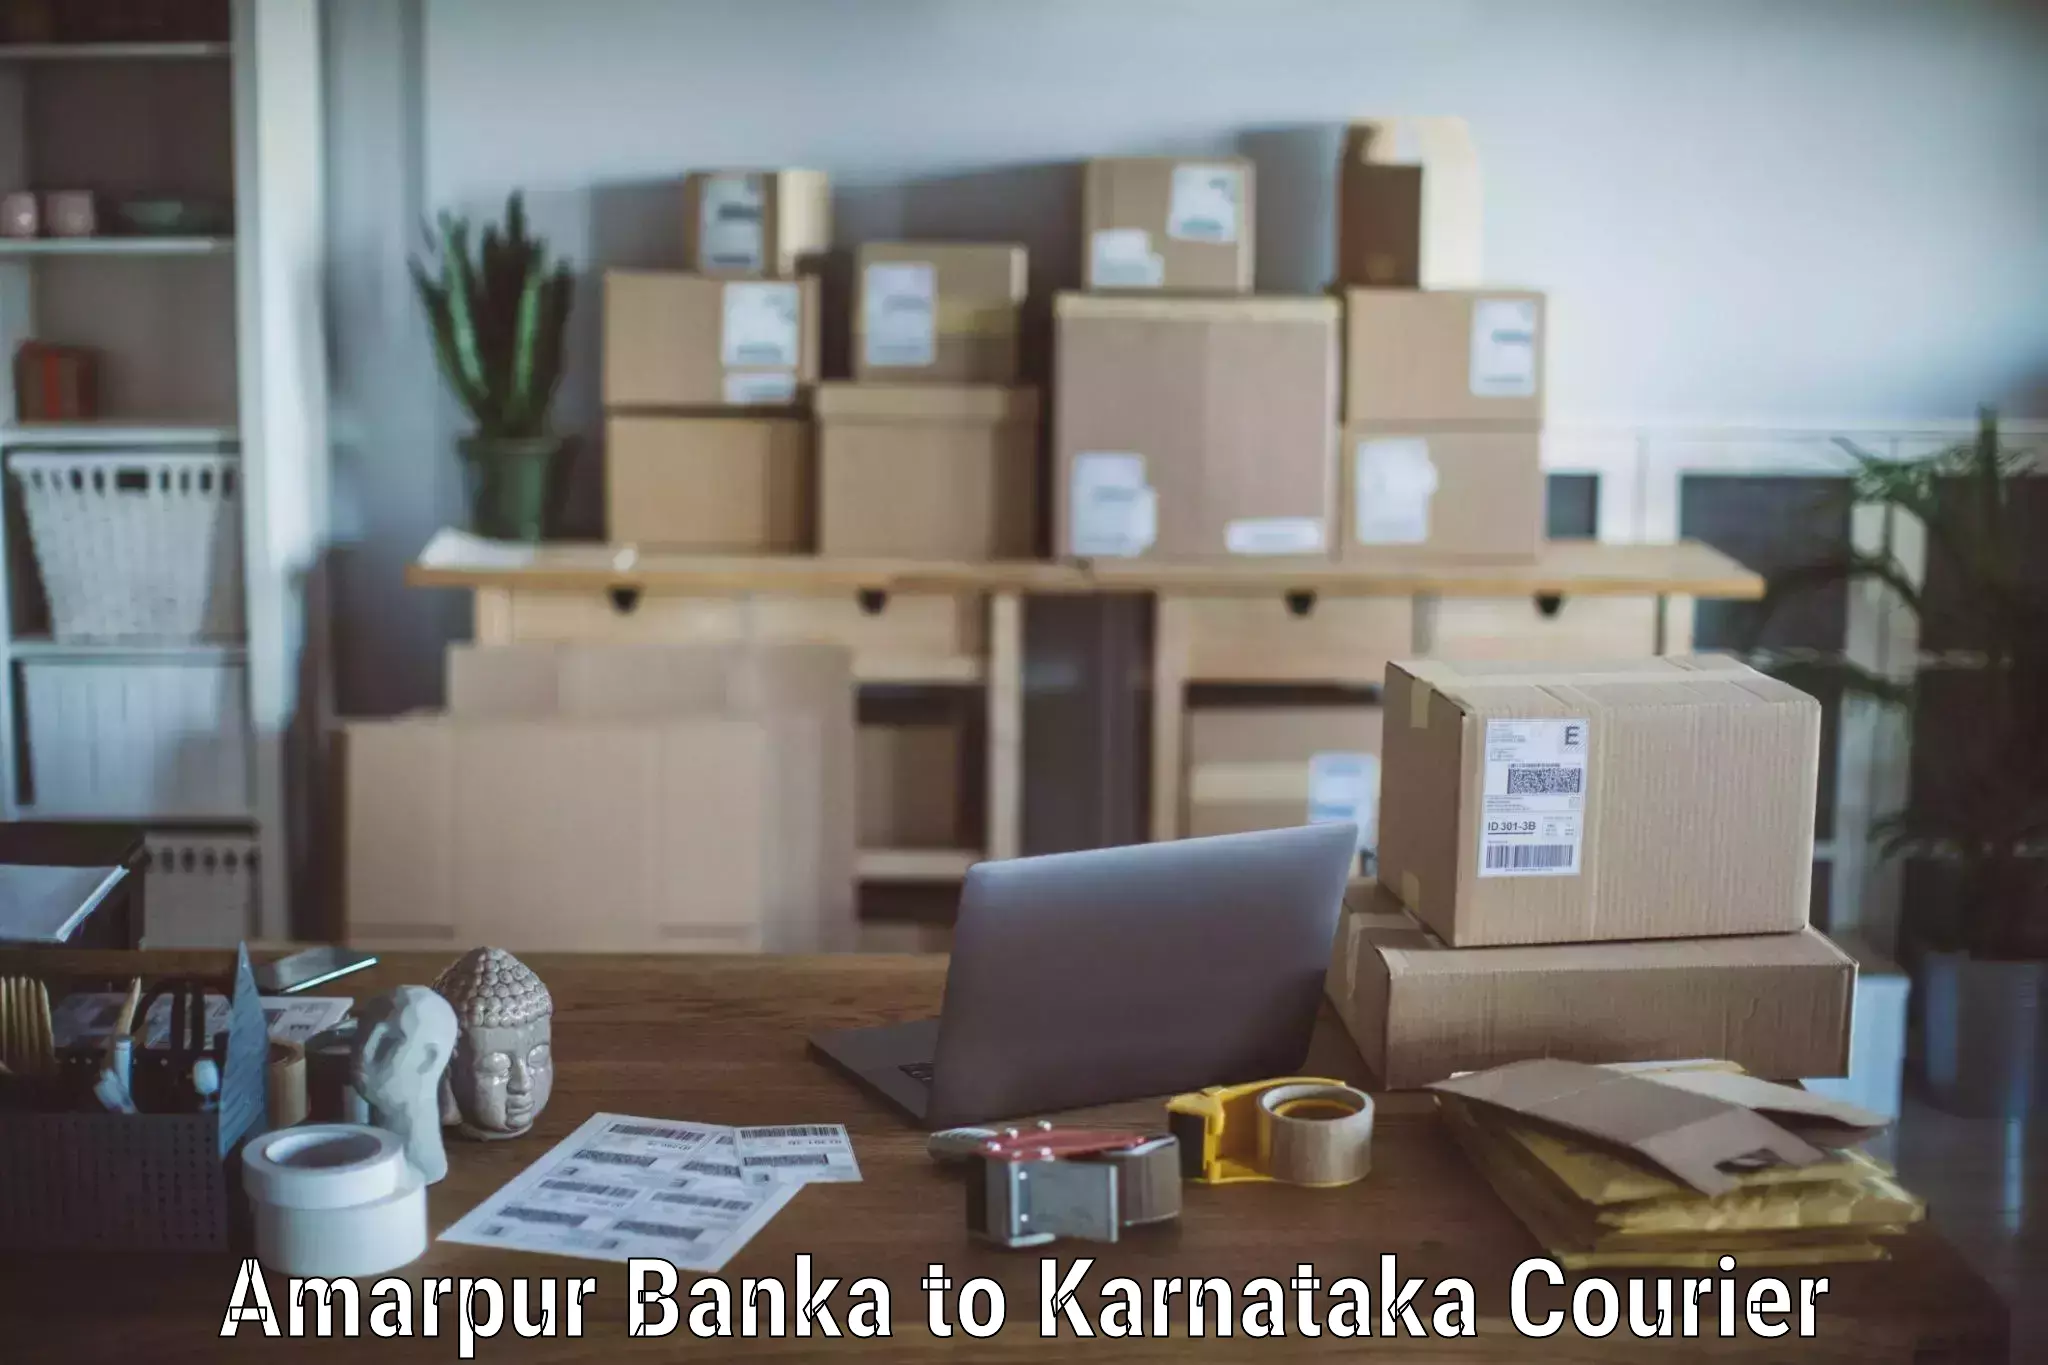 Reliable movers Amarpur Banka to Sullia